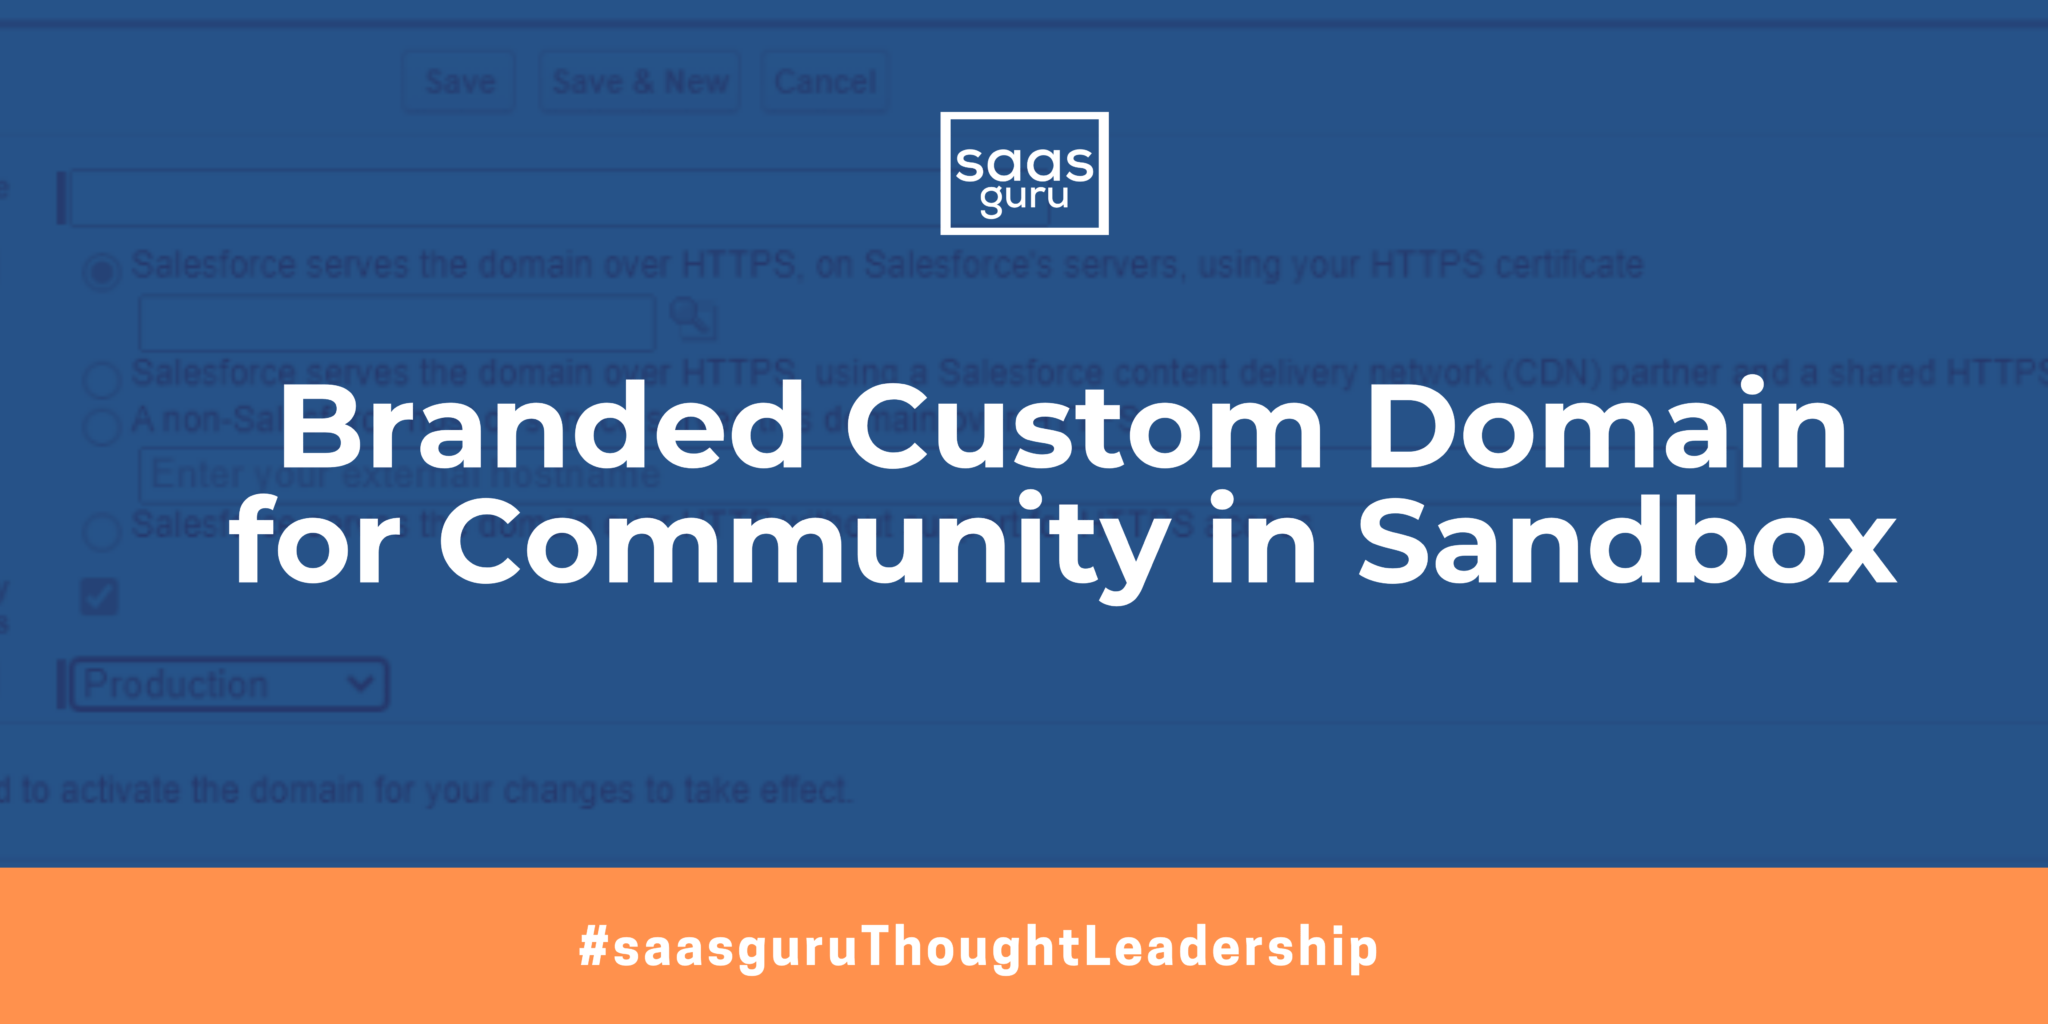 Branded Custom Domain for Community in Sandbox